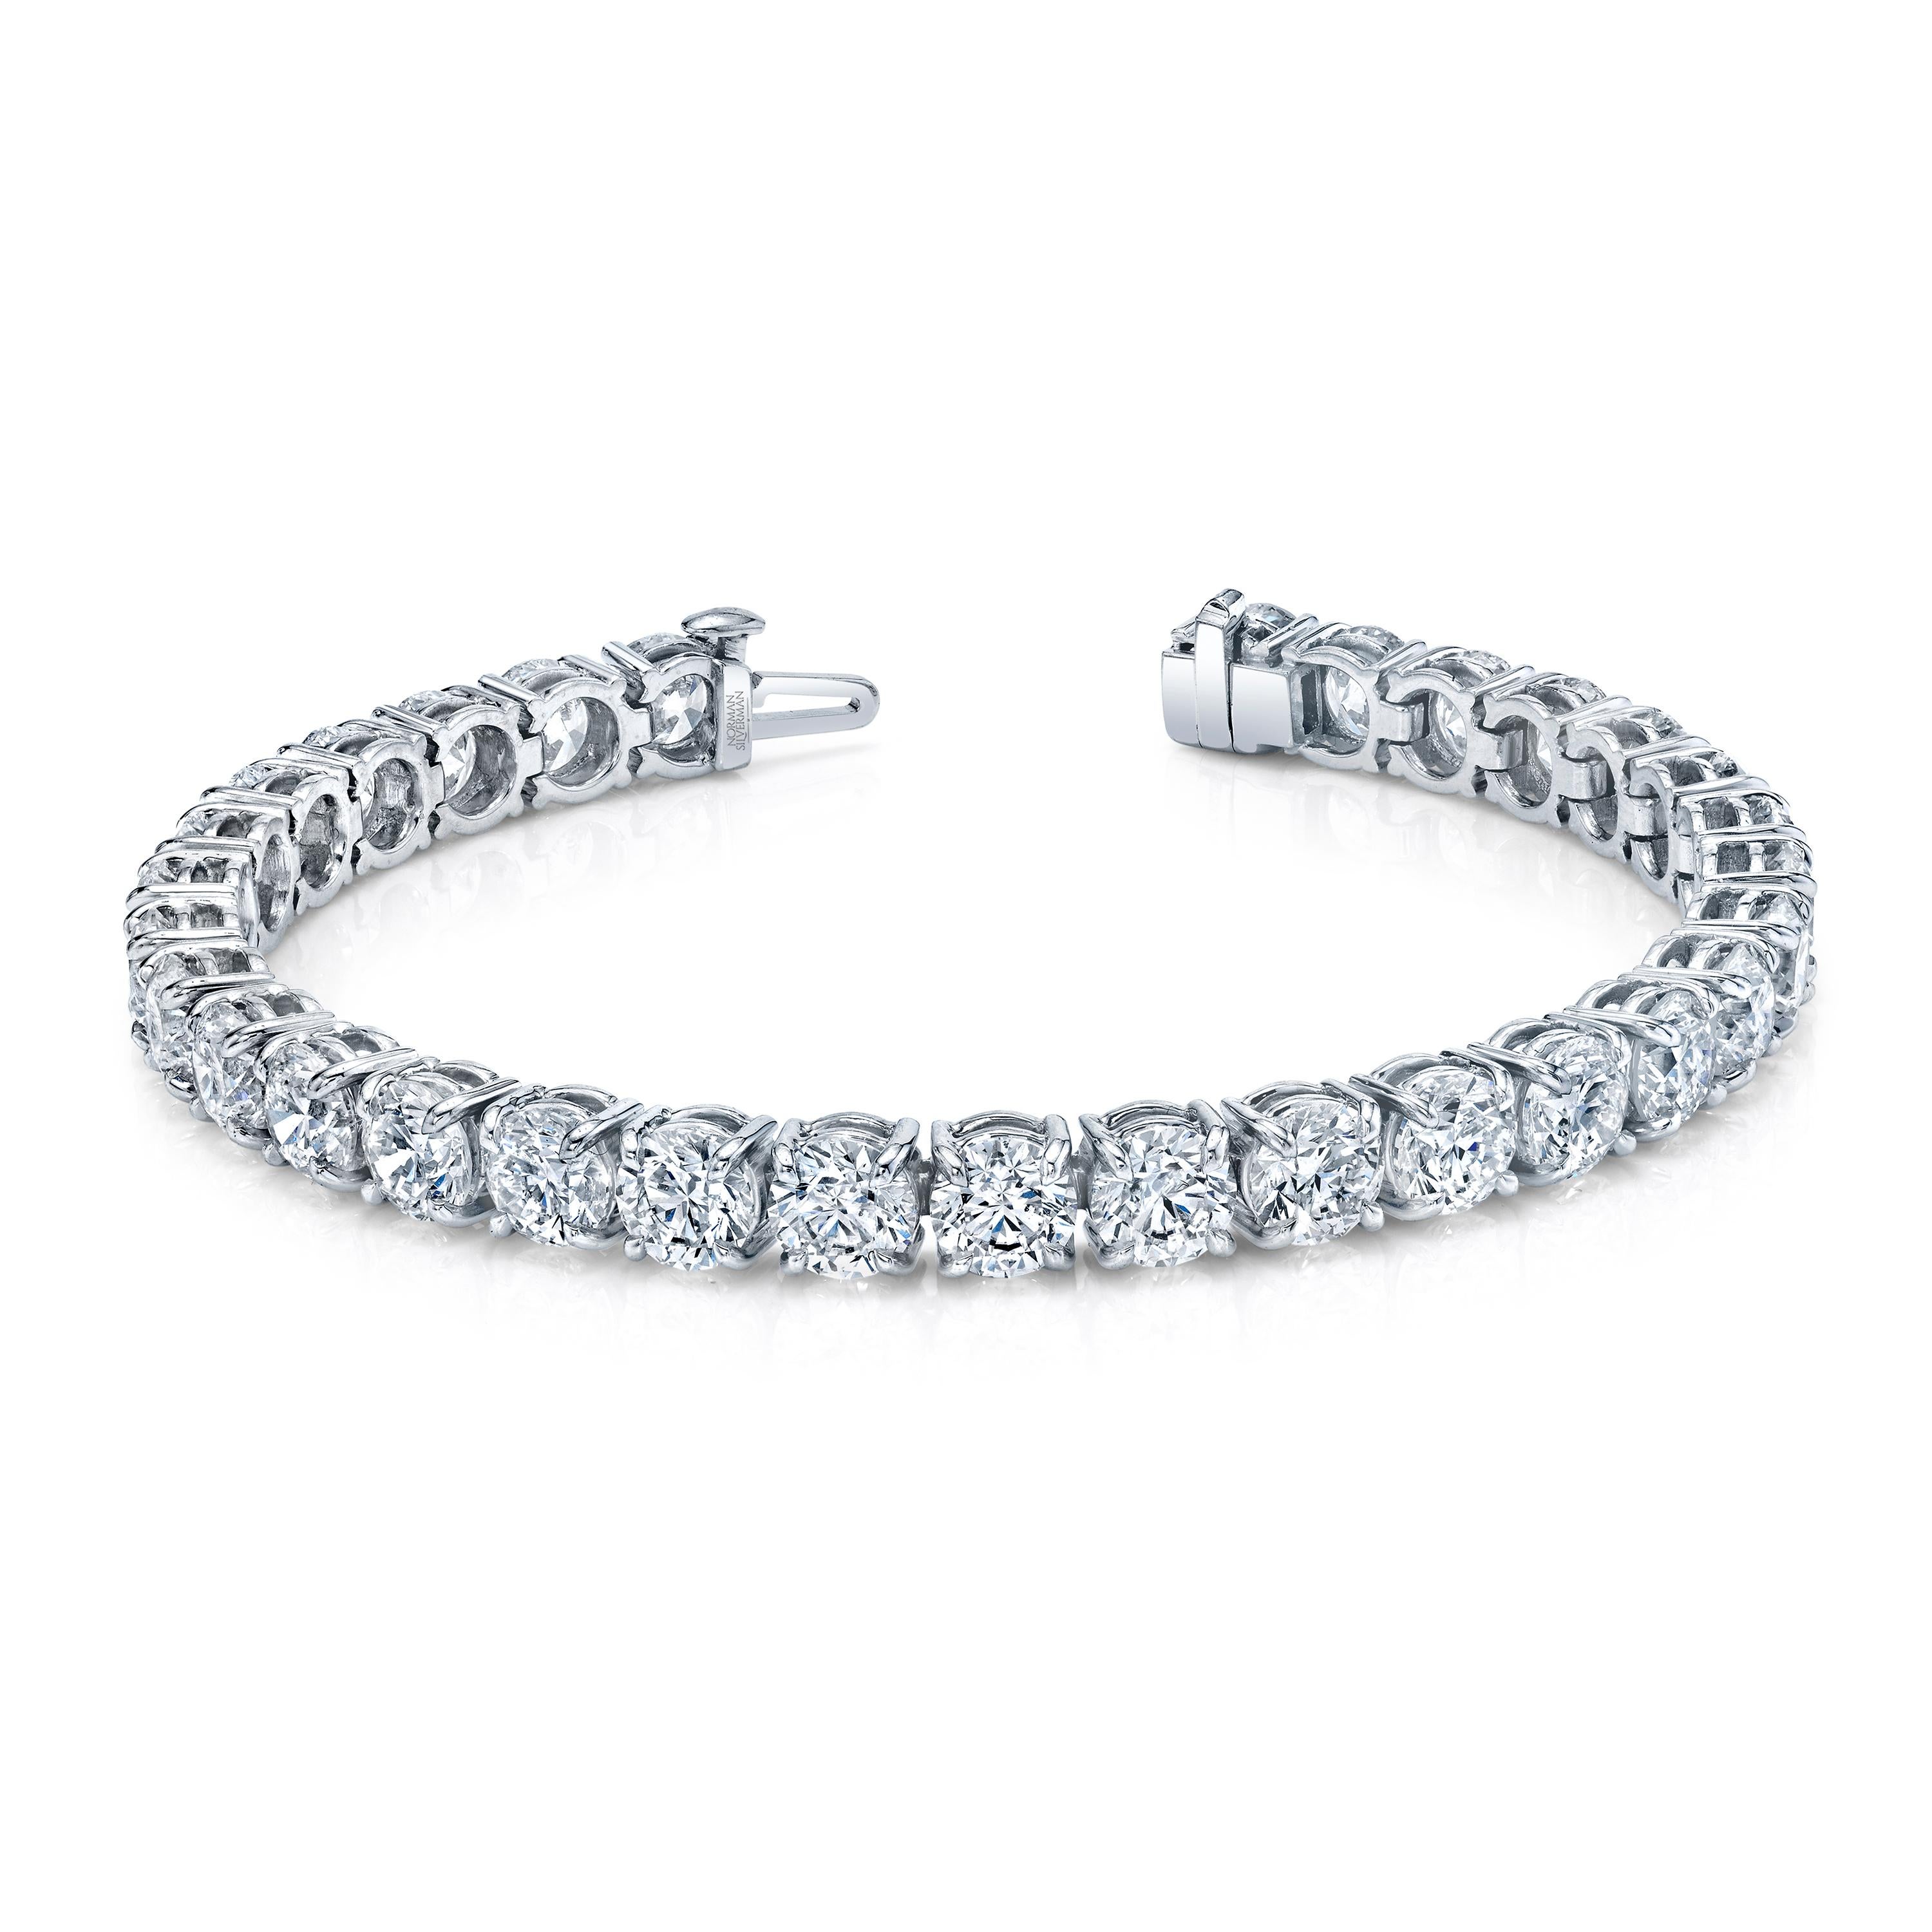 Bracelet Straight Line en or blanc 18k serti de 31 diamants ronds de taille brillant d'un poids total de 21,92 carats.
Couleur approximative G - H  Clarté  VSS1  
7 pouces de long
